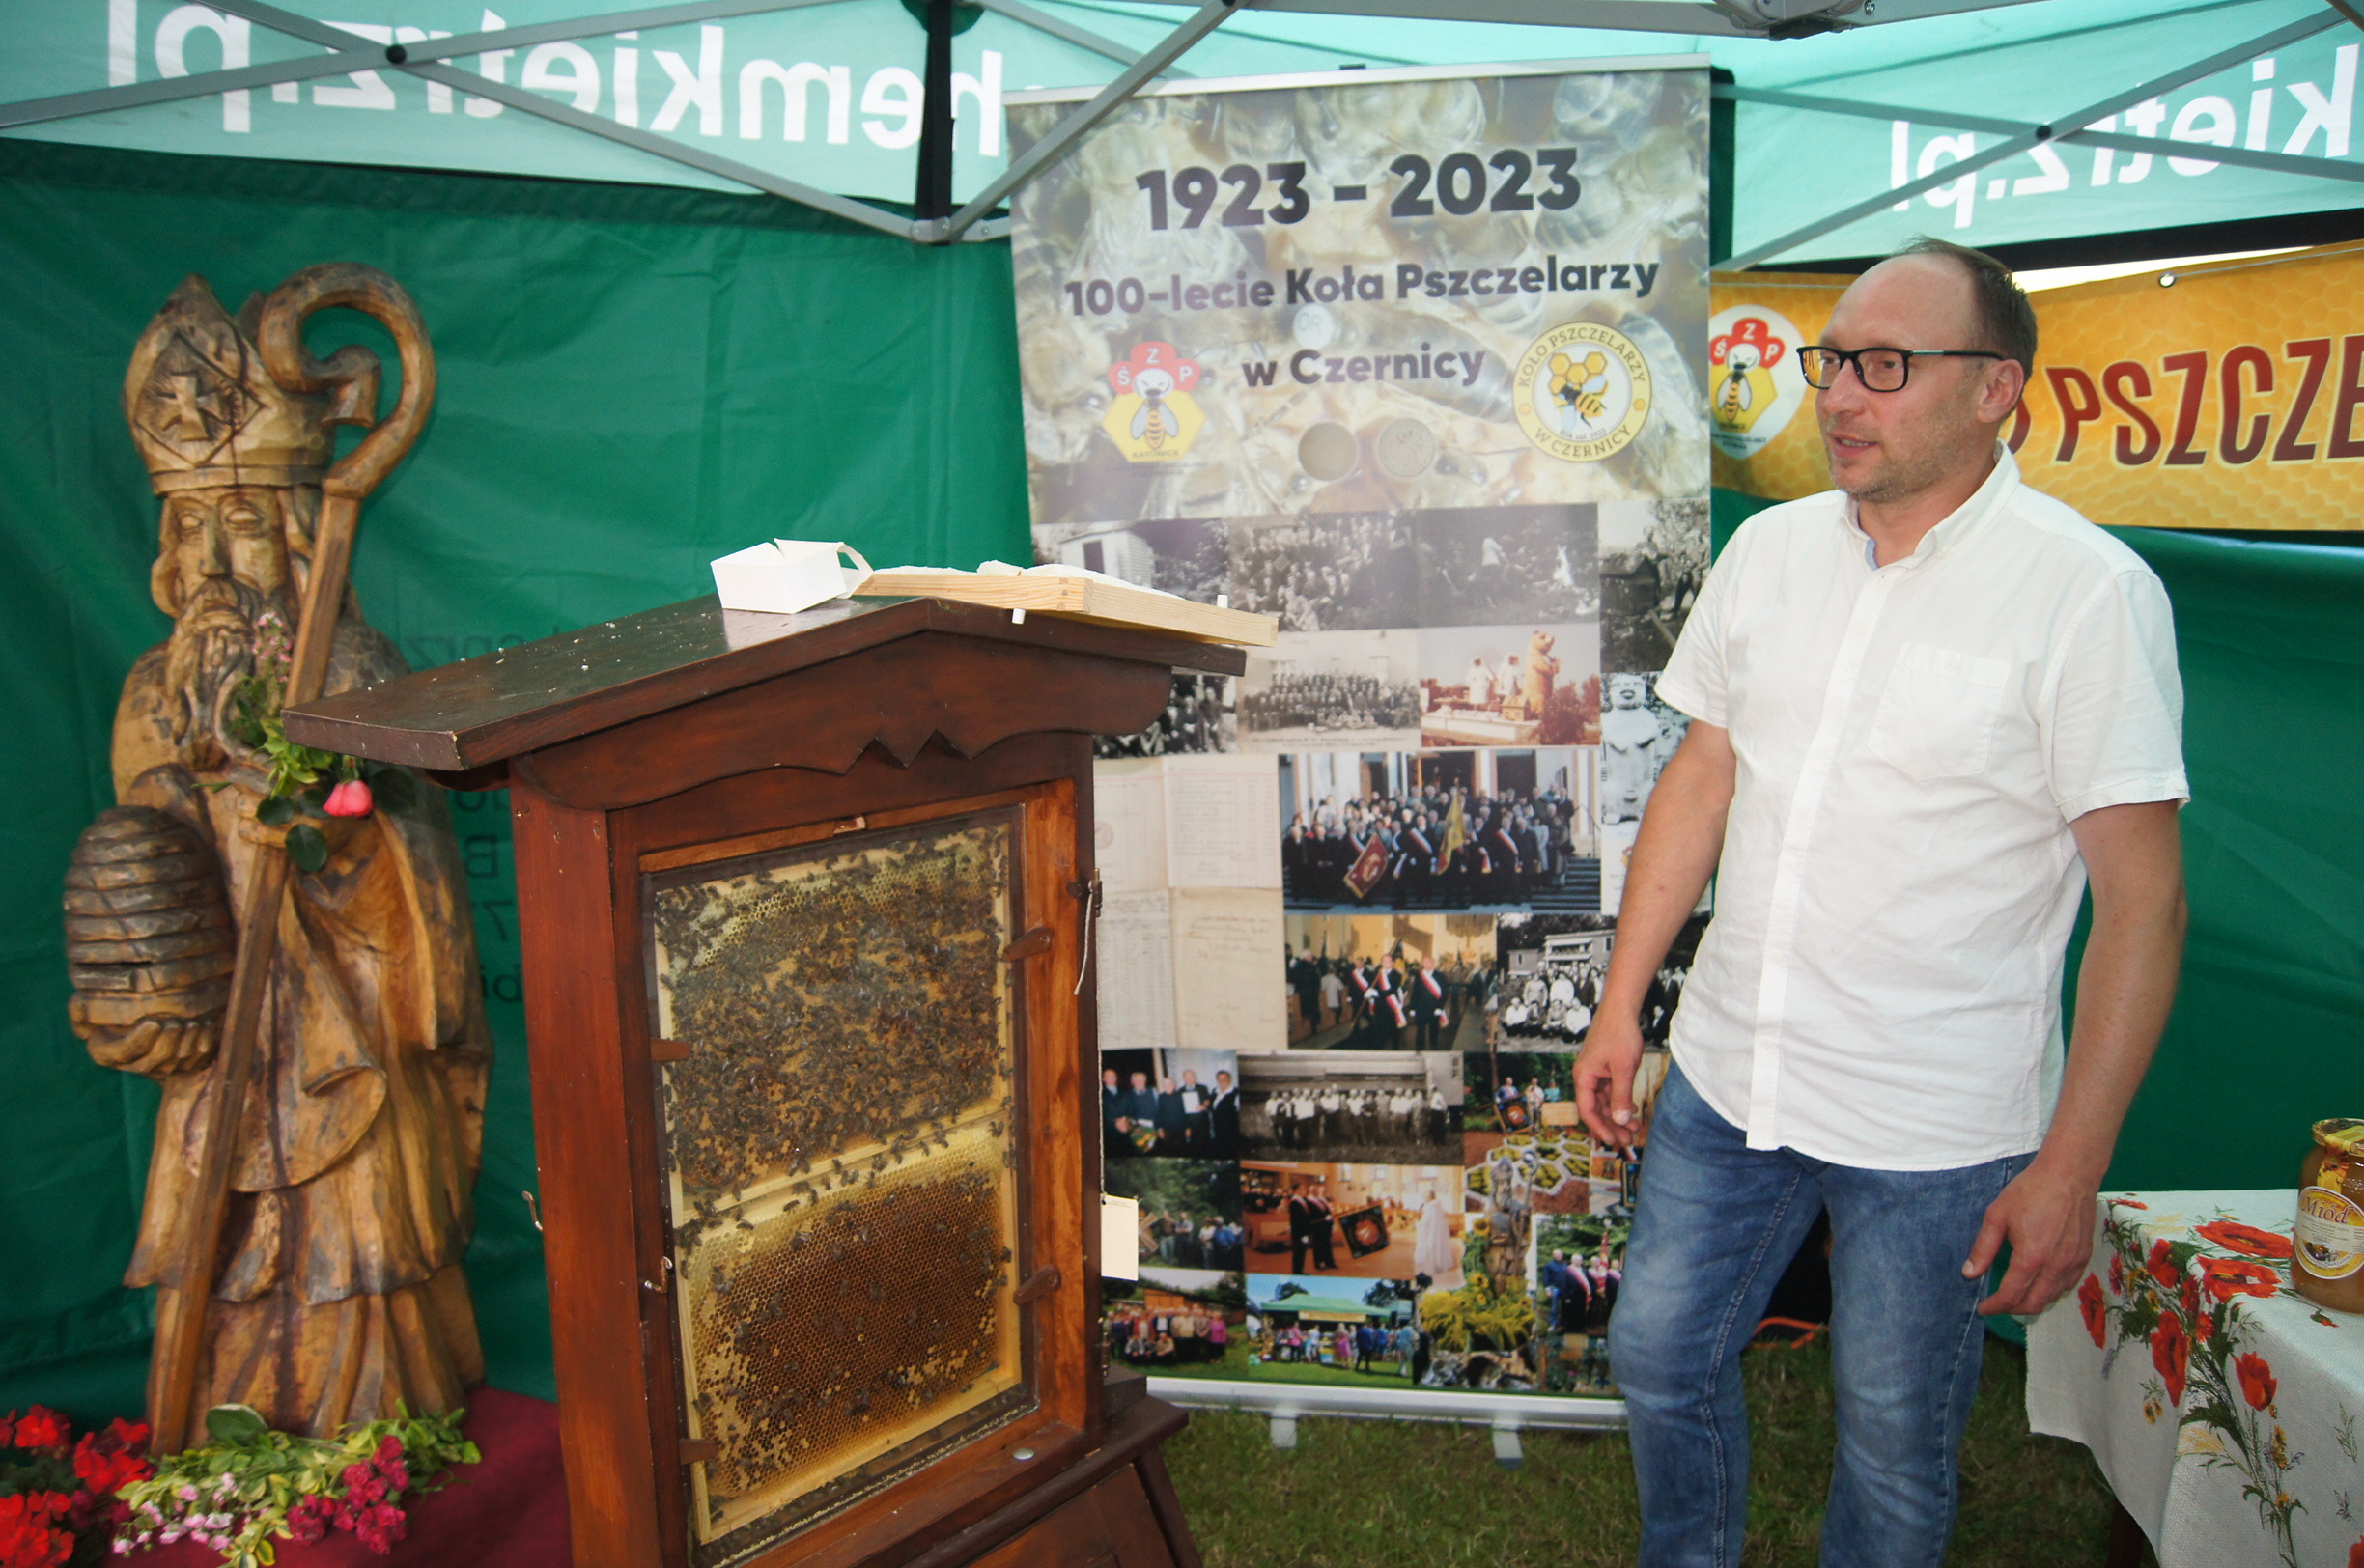 Swoje stoisko wystawili również pszczelarze. Na zdjęciu Adam Barnabas z koła pszczelarzy w Czernicy. Fot. Fryderyk Kamczyk